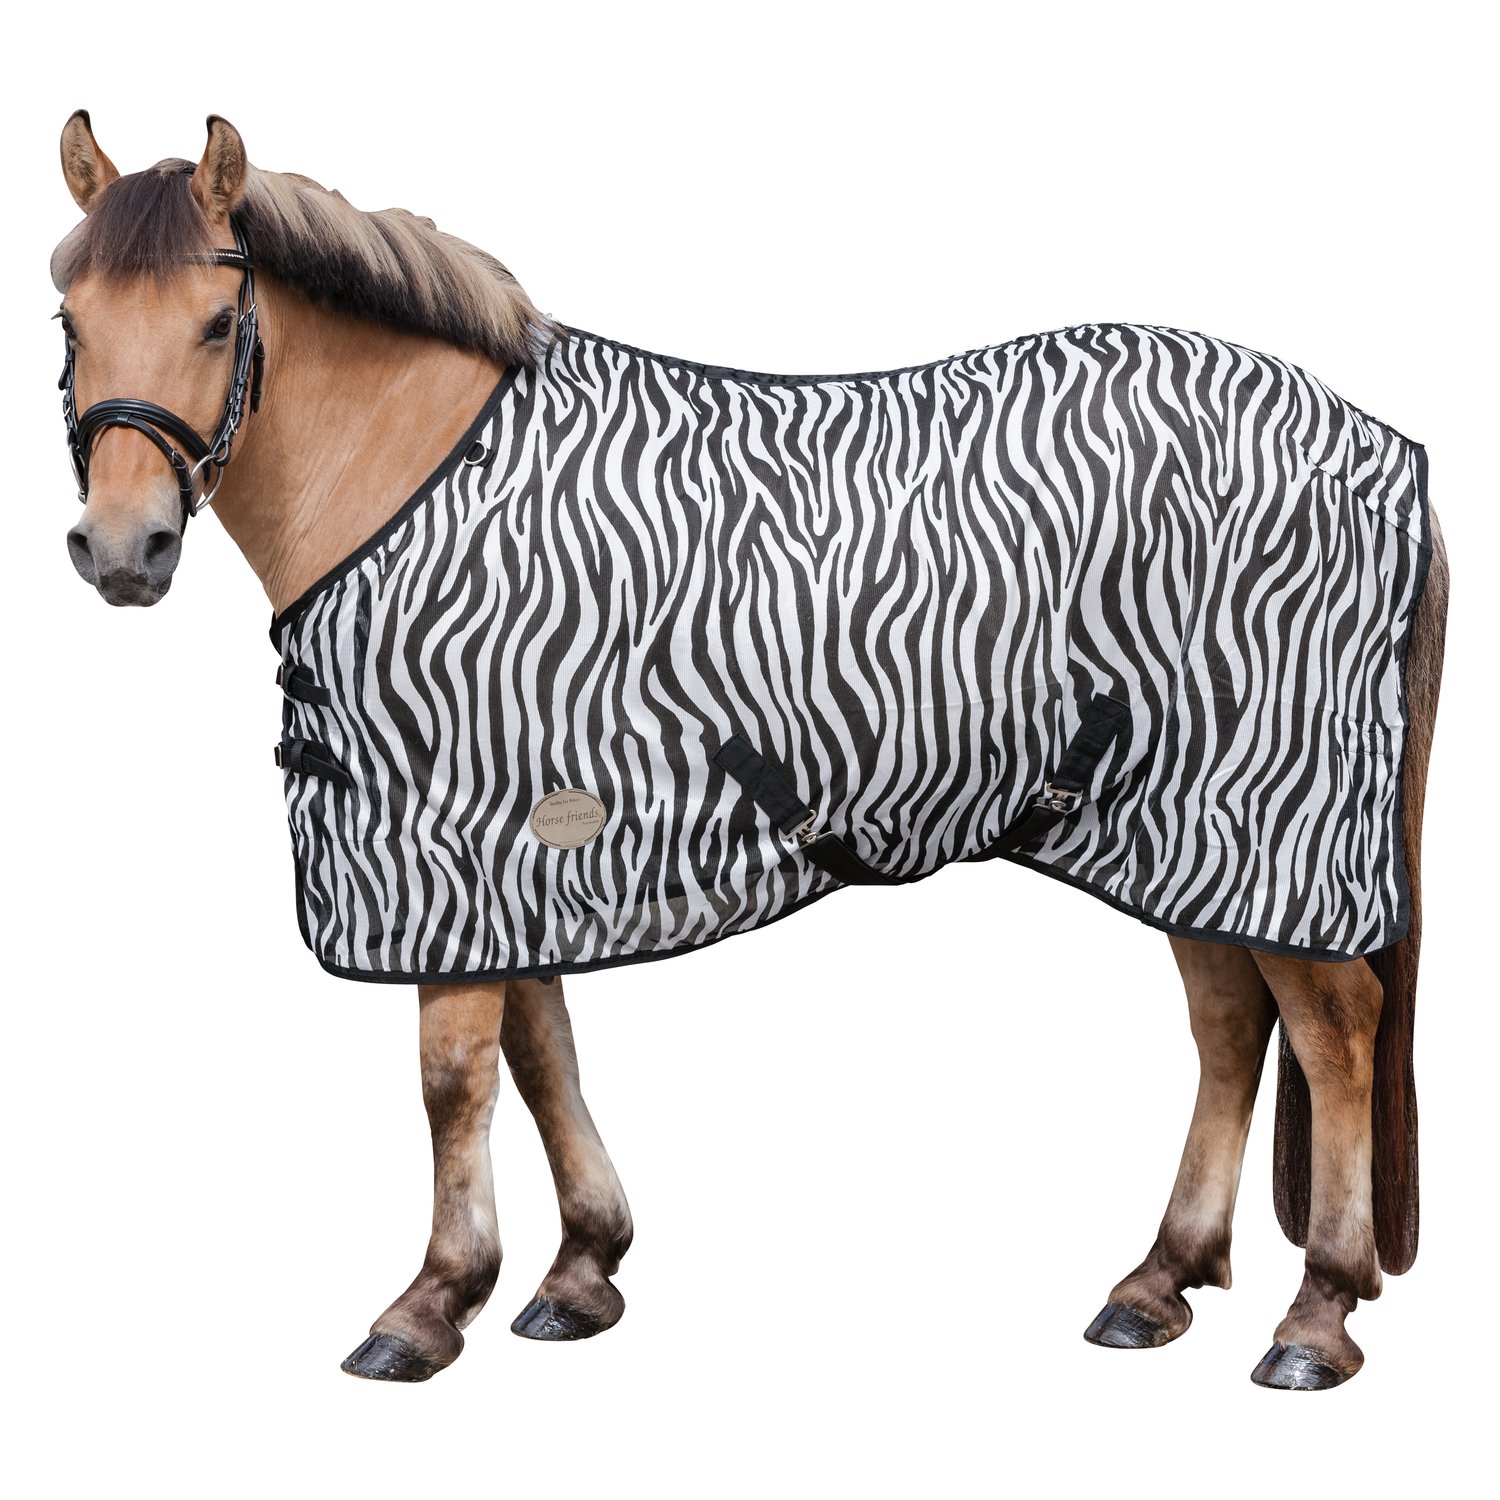 Horse-friends Fliegendecke mit Zebra-Muster zebra | 155 cm